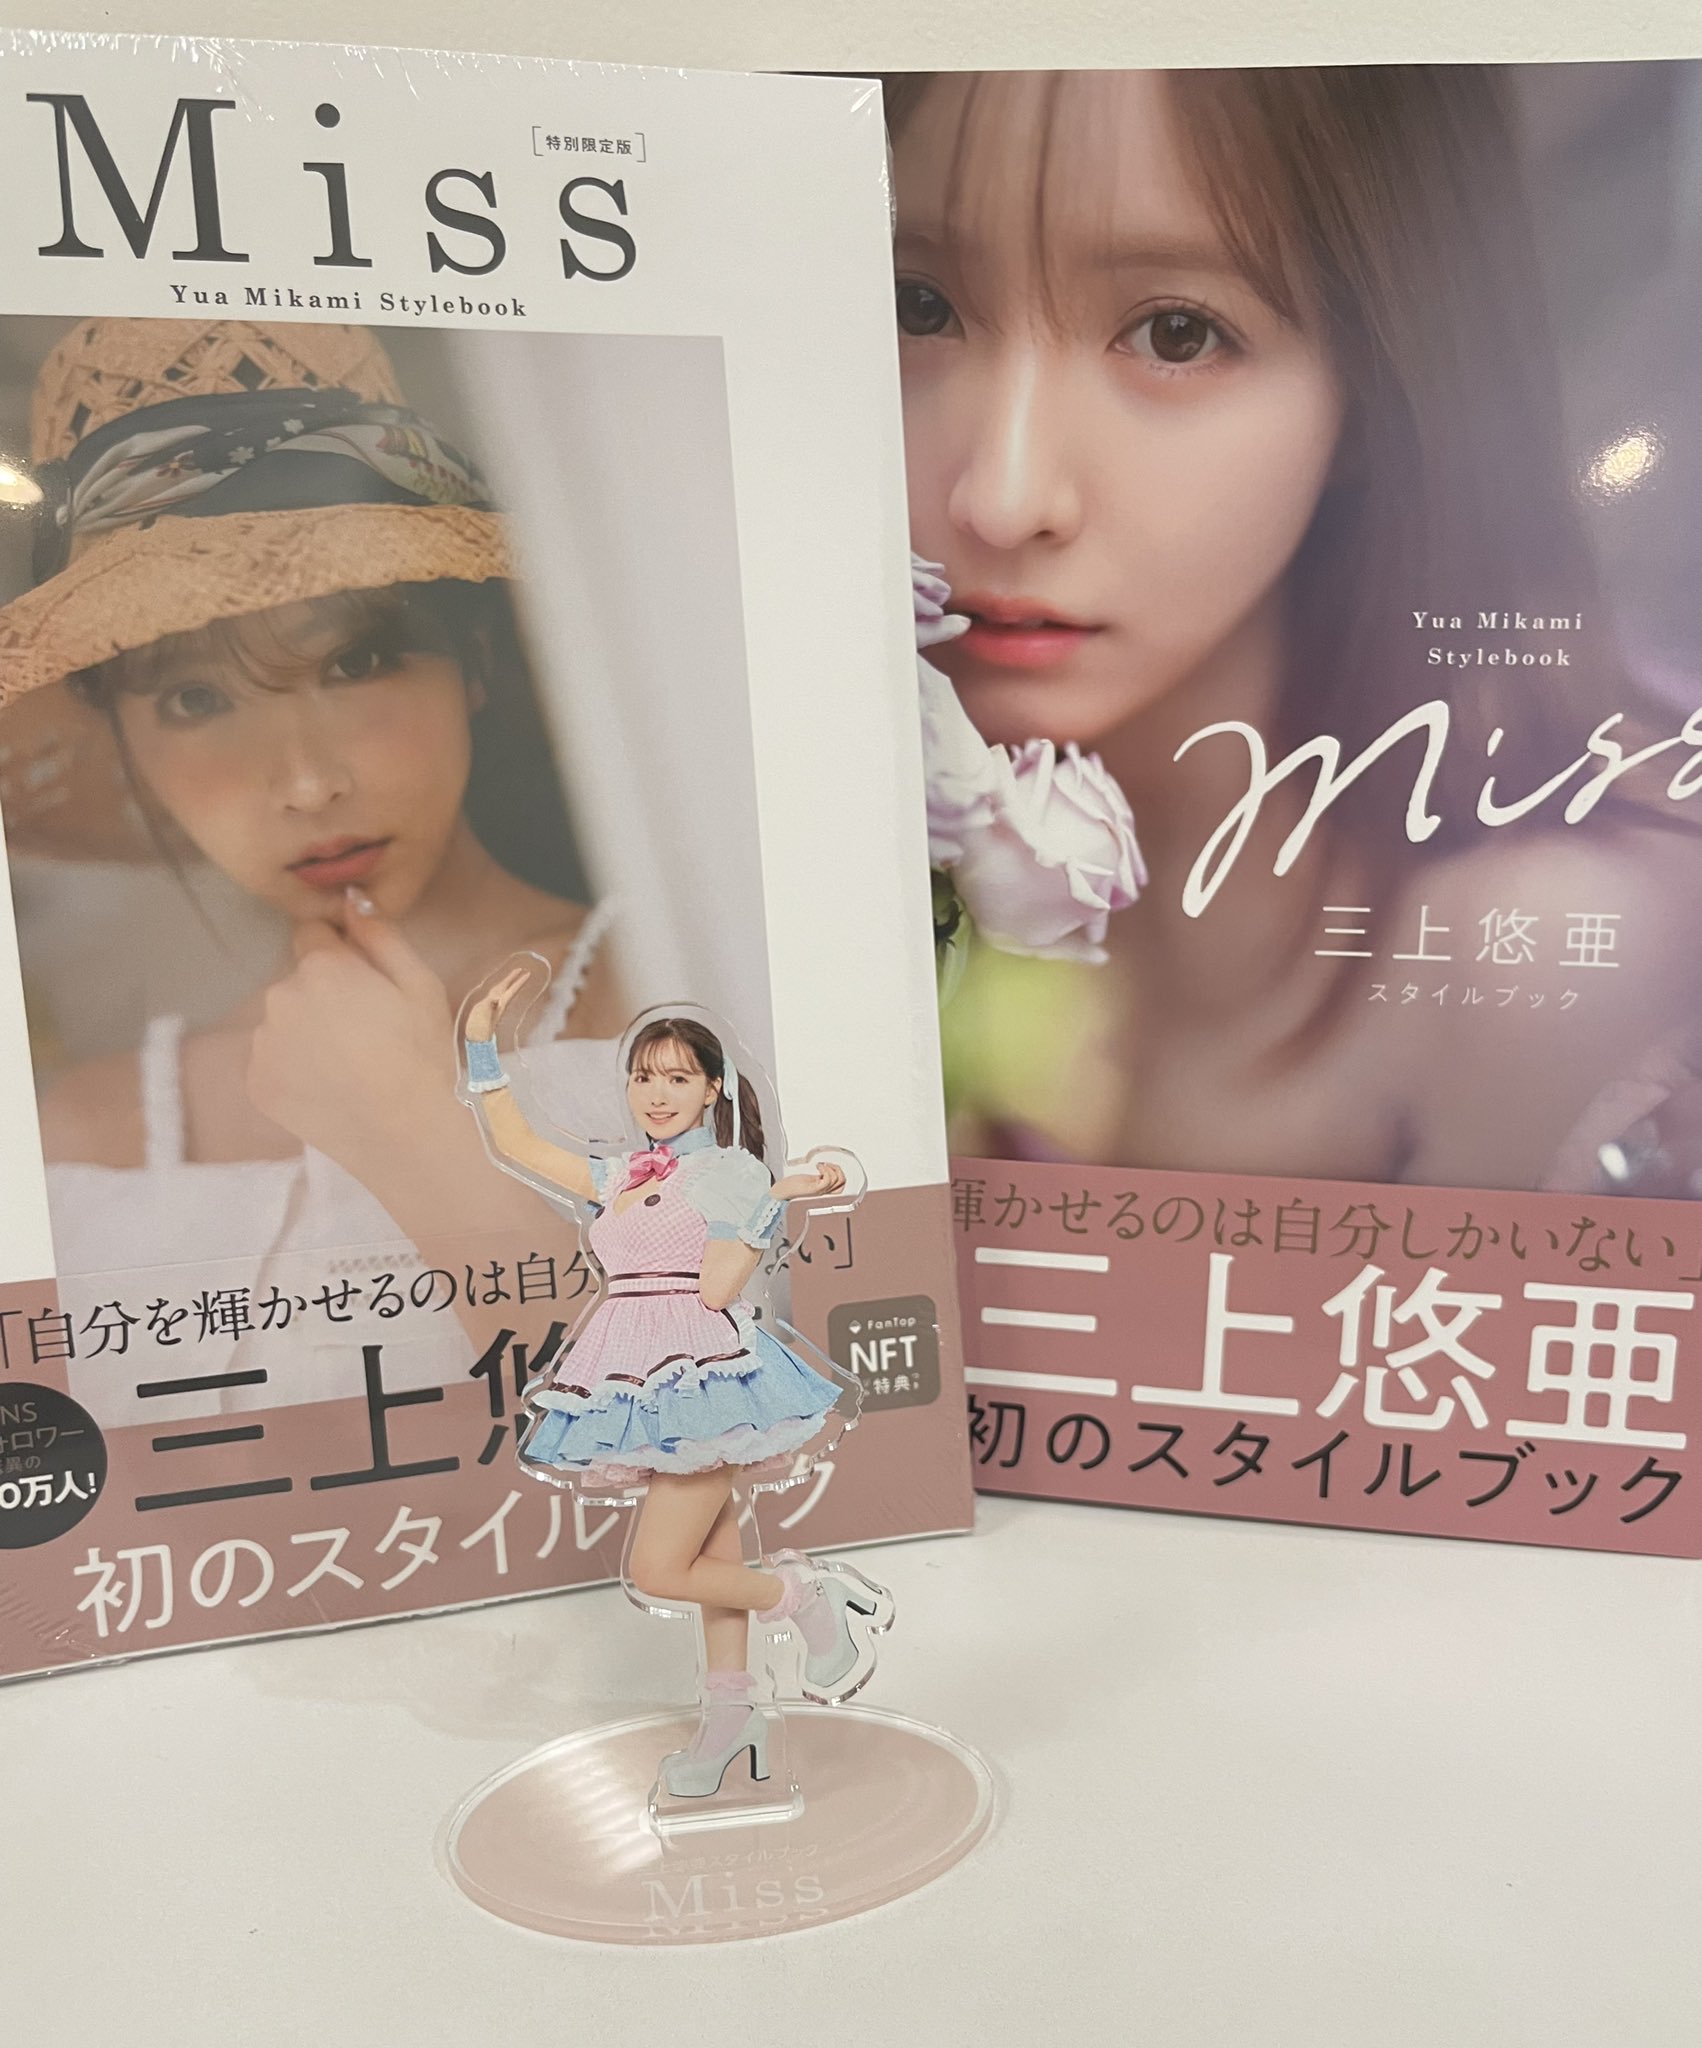 三上悠亜初のスタイルブック「Miss」発売中【公式】 on Twitter: 